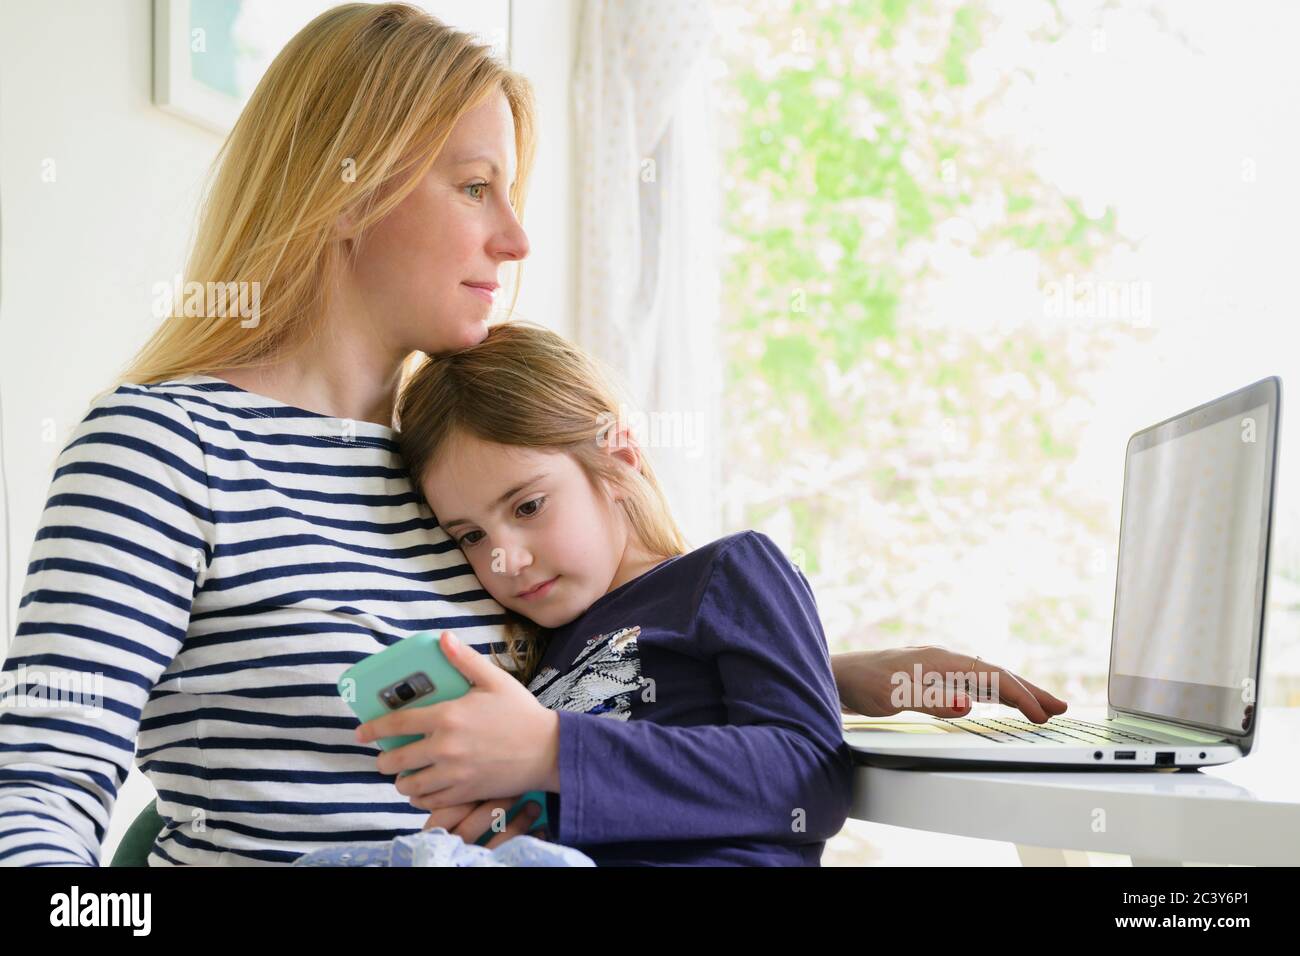 La mère travaille sur un ordinateur portable alors que la fille (6-7) utilise un smartphone Banque D'Images